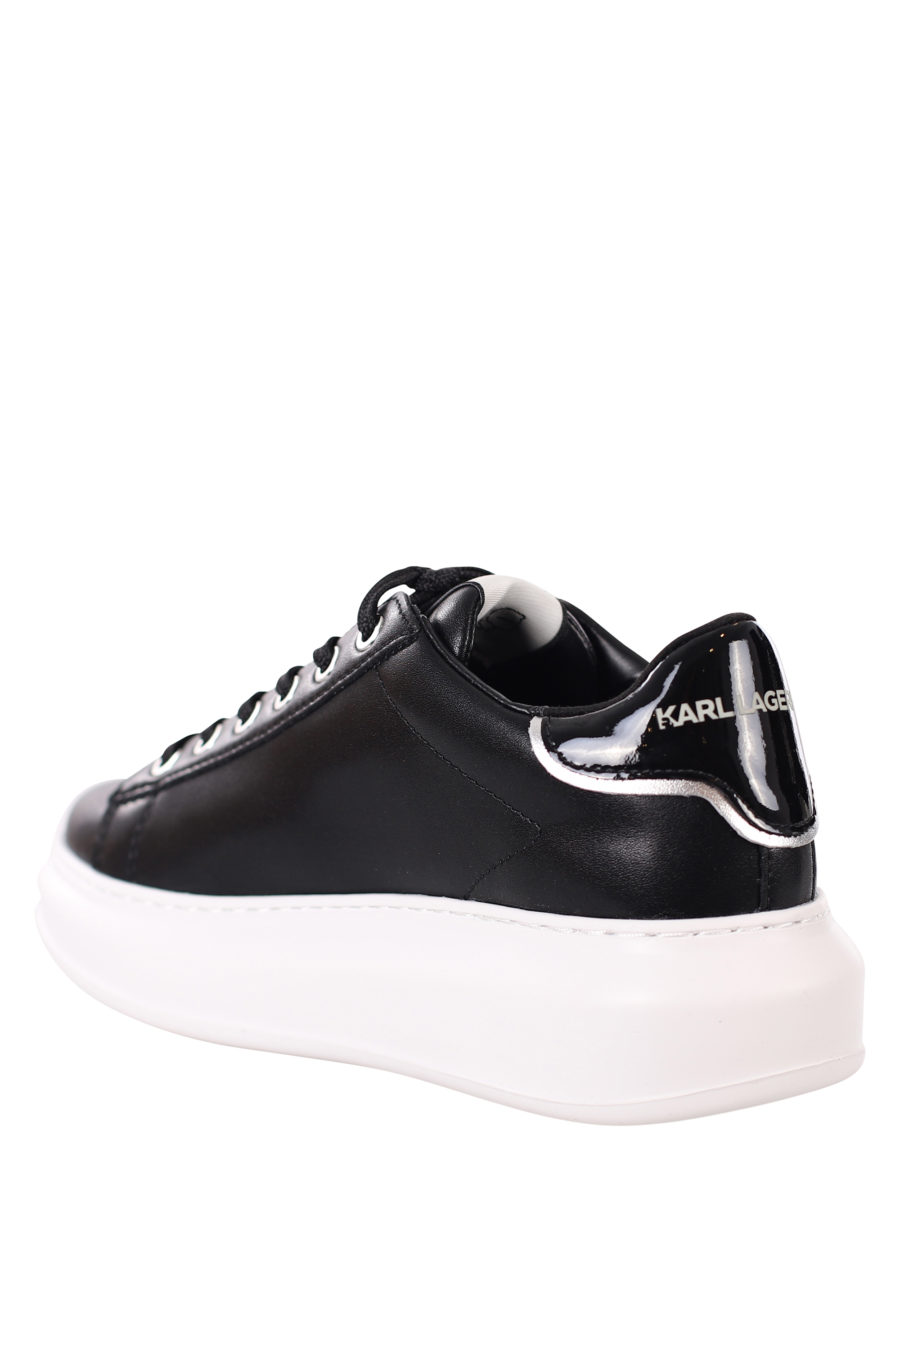 Zapatillas negras con logo en silueta blanco - IMG 0406